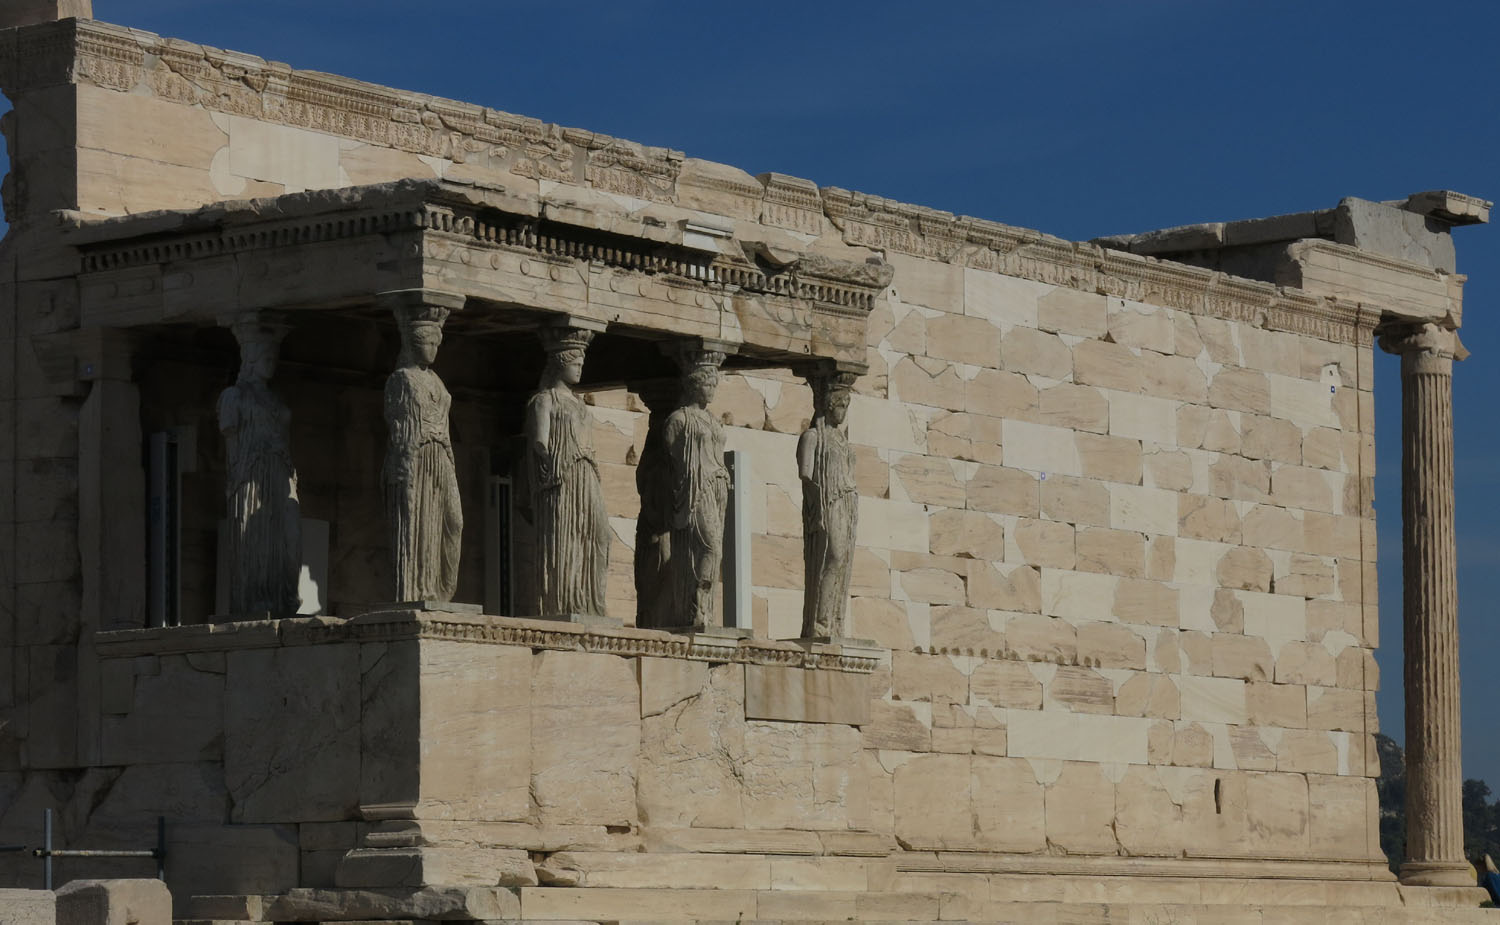 Greece-Athens-Acropolis